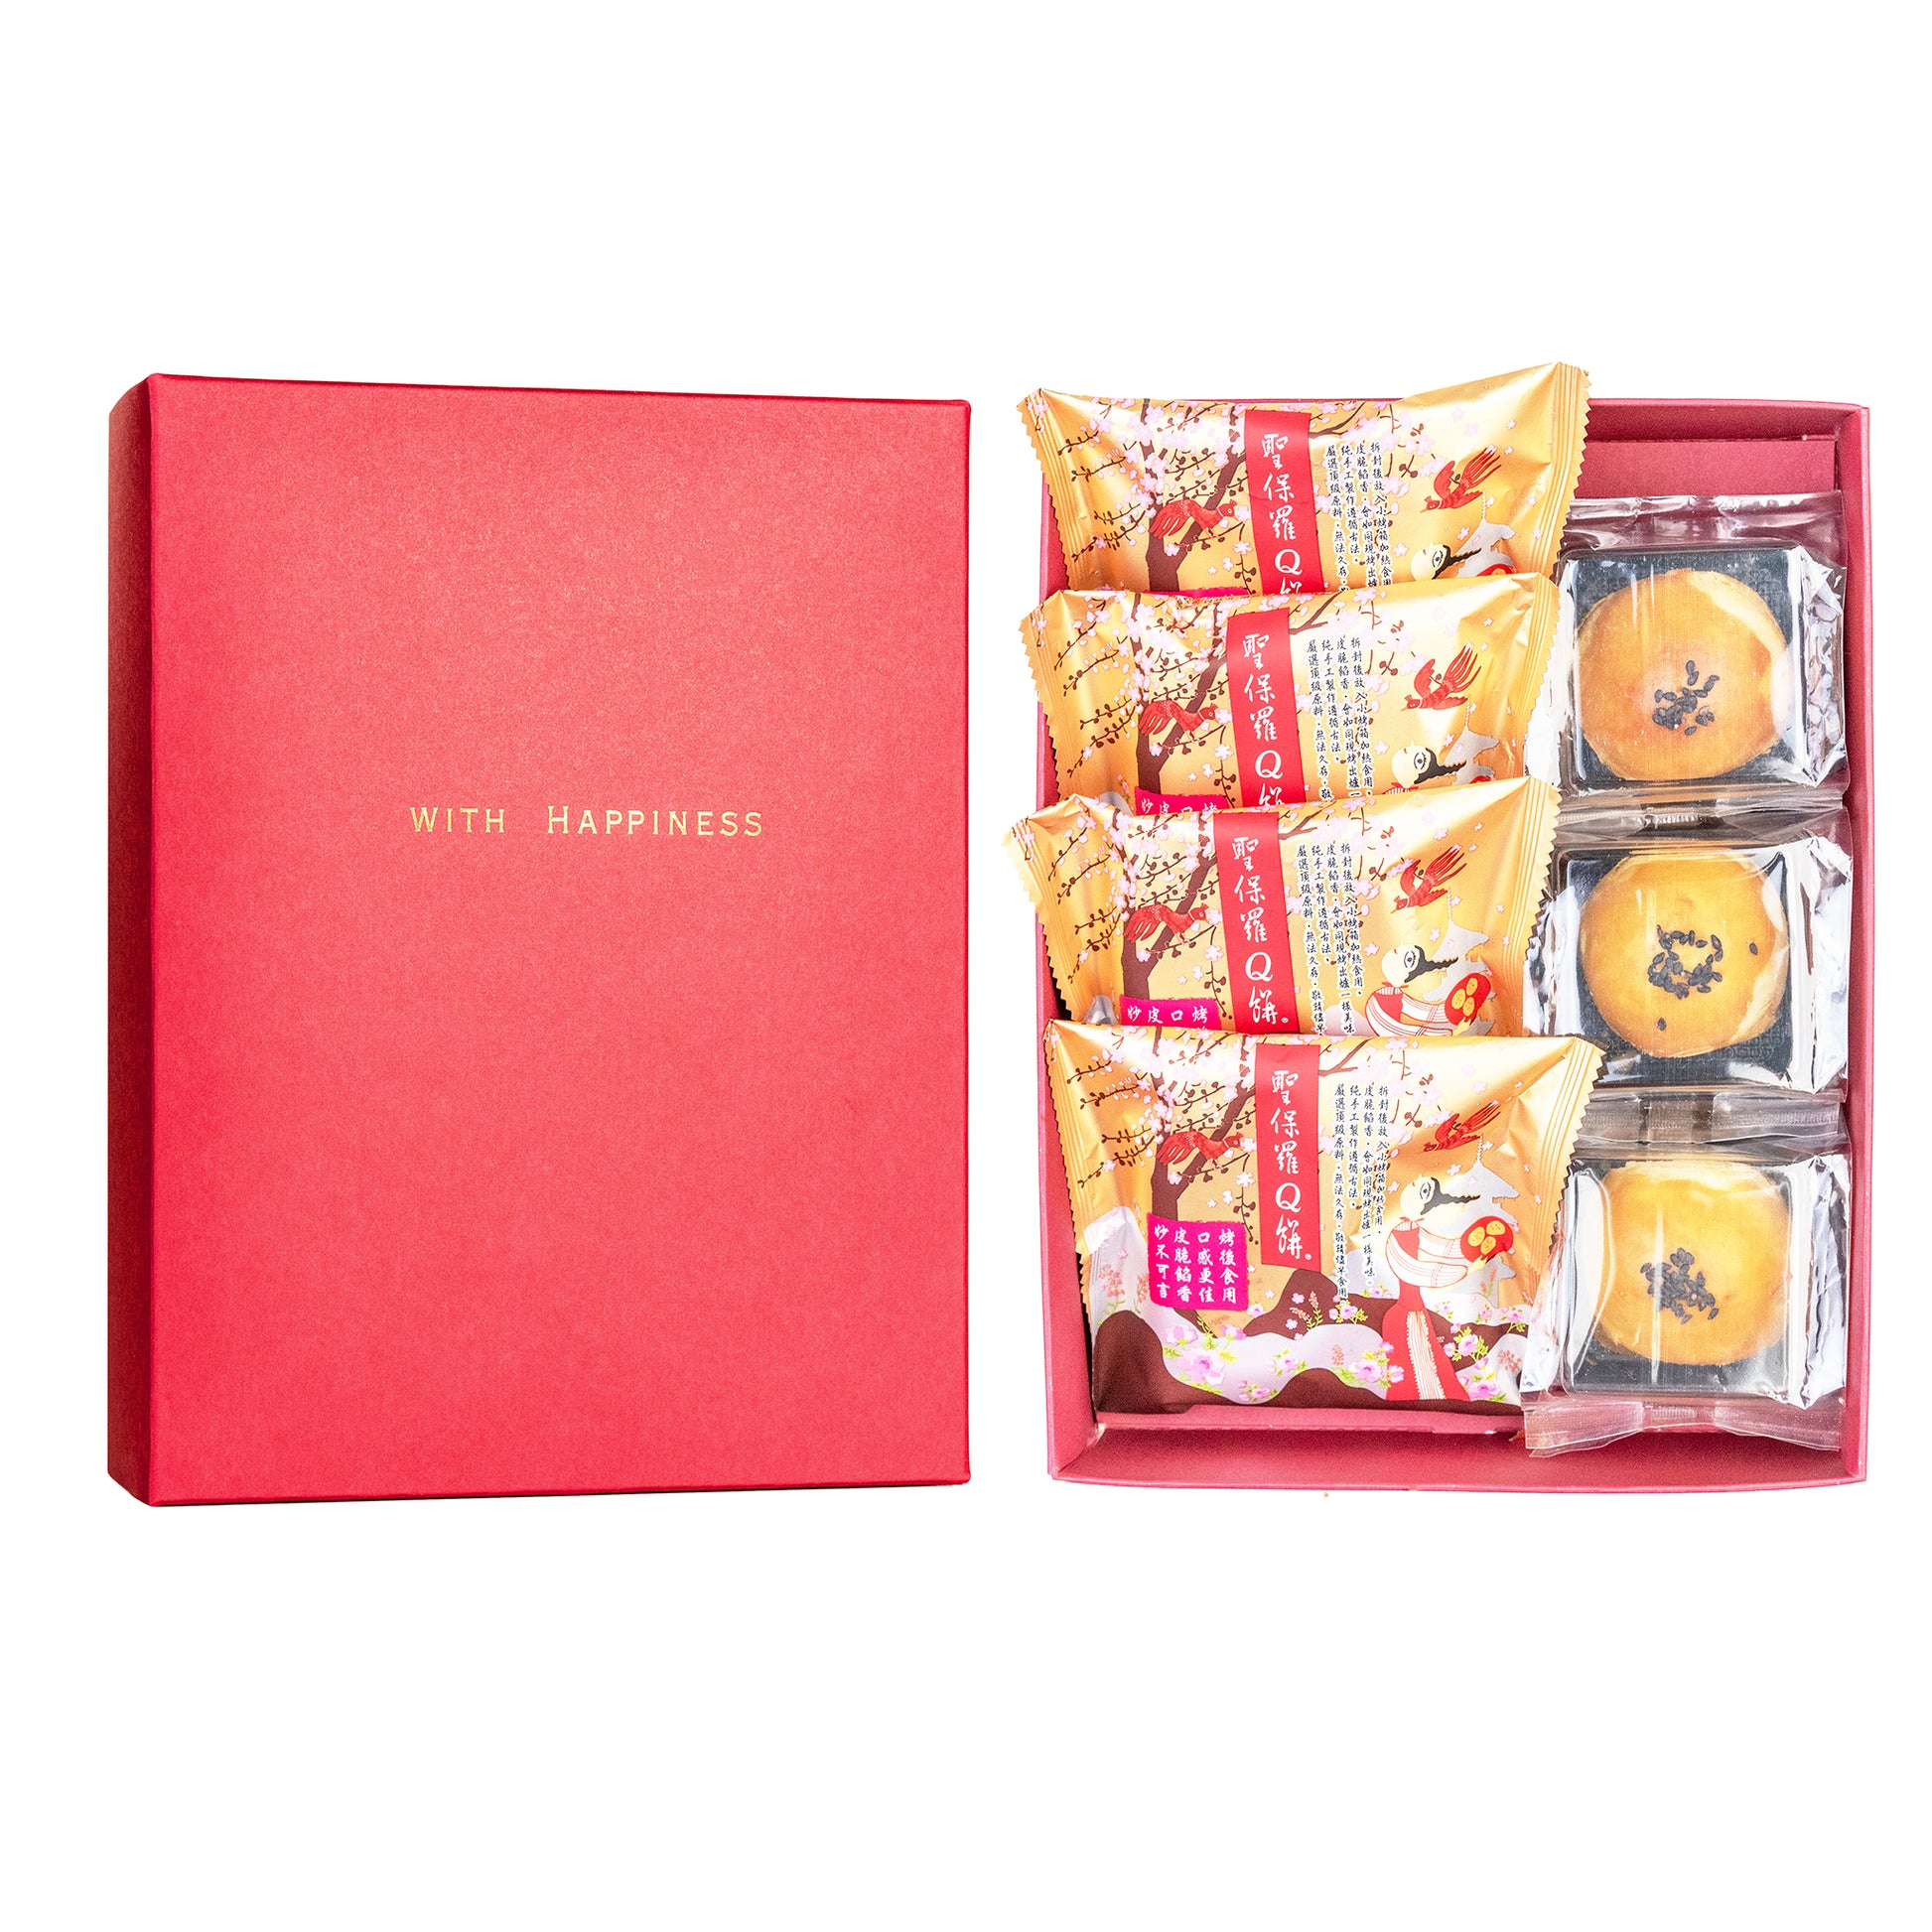 客製化禮盒．企業送禮．勵馨公益蛋黃酥．聖保羅Q餅．過年中秋端午三節